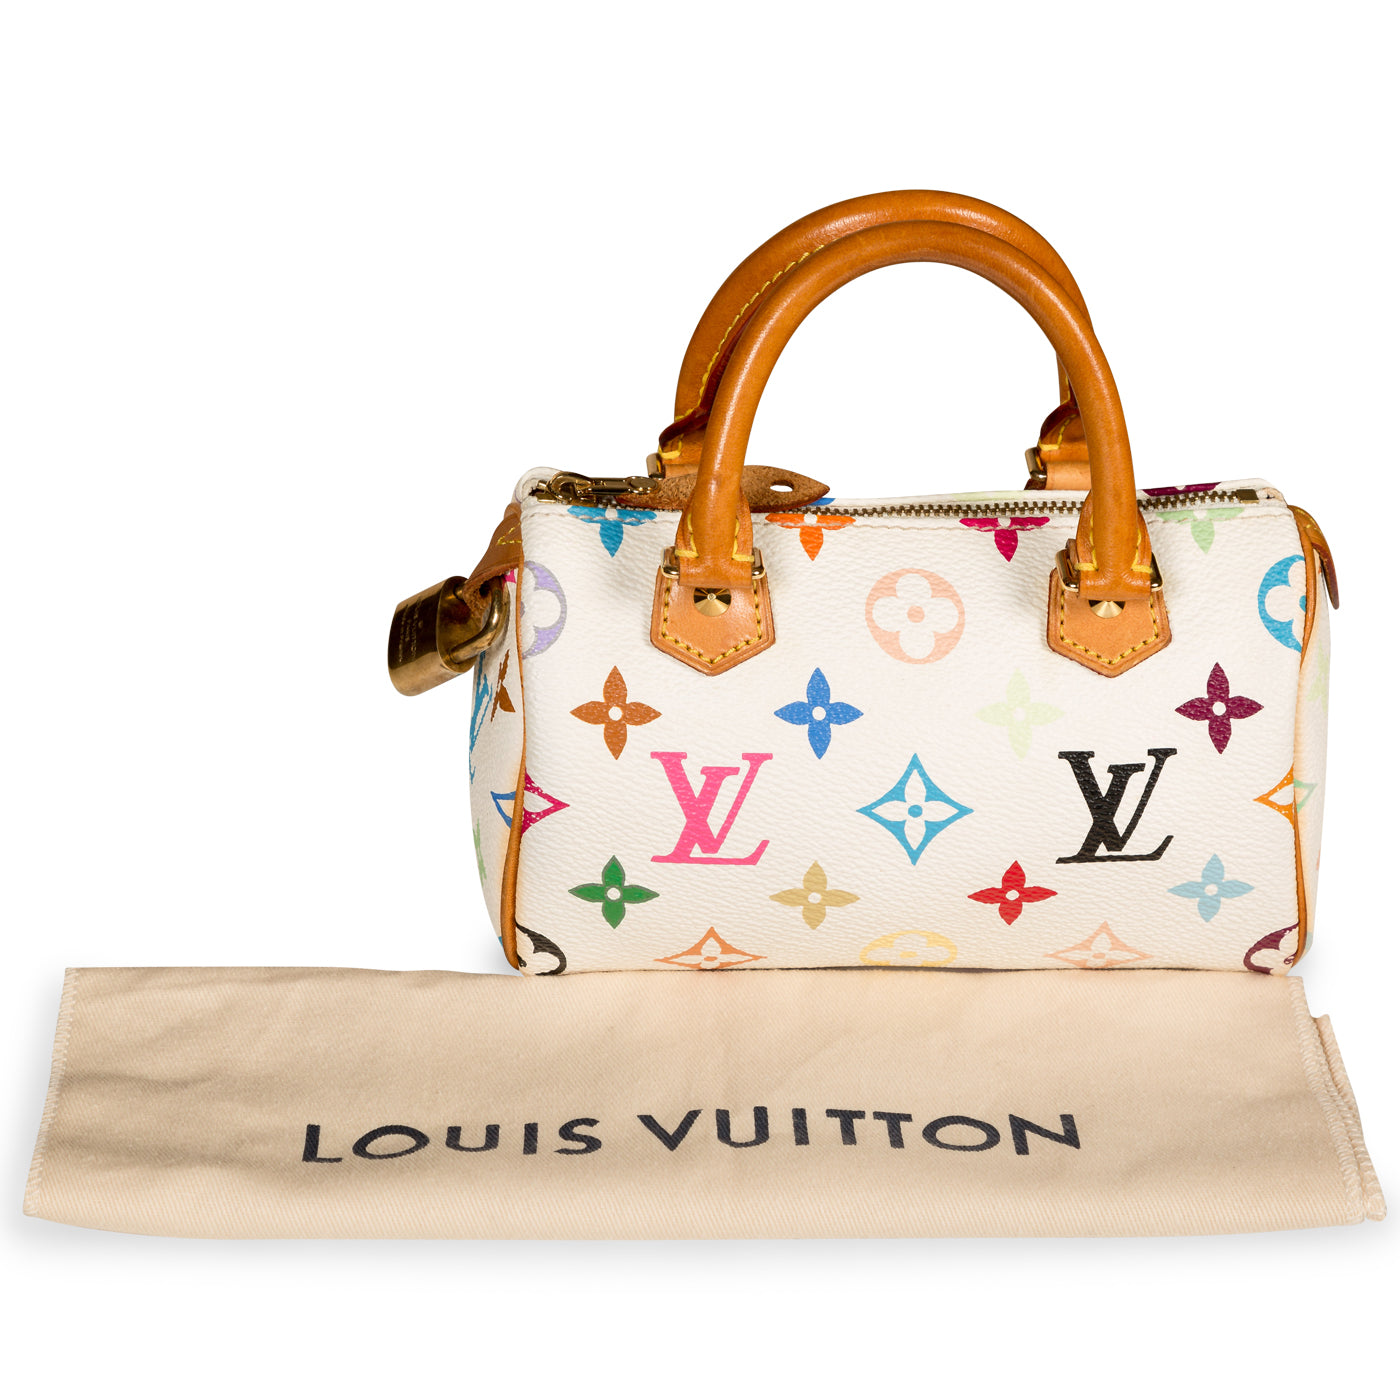 Louis Vuitton - Speedy HL - Multicolore Canvas - White - Vintage